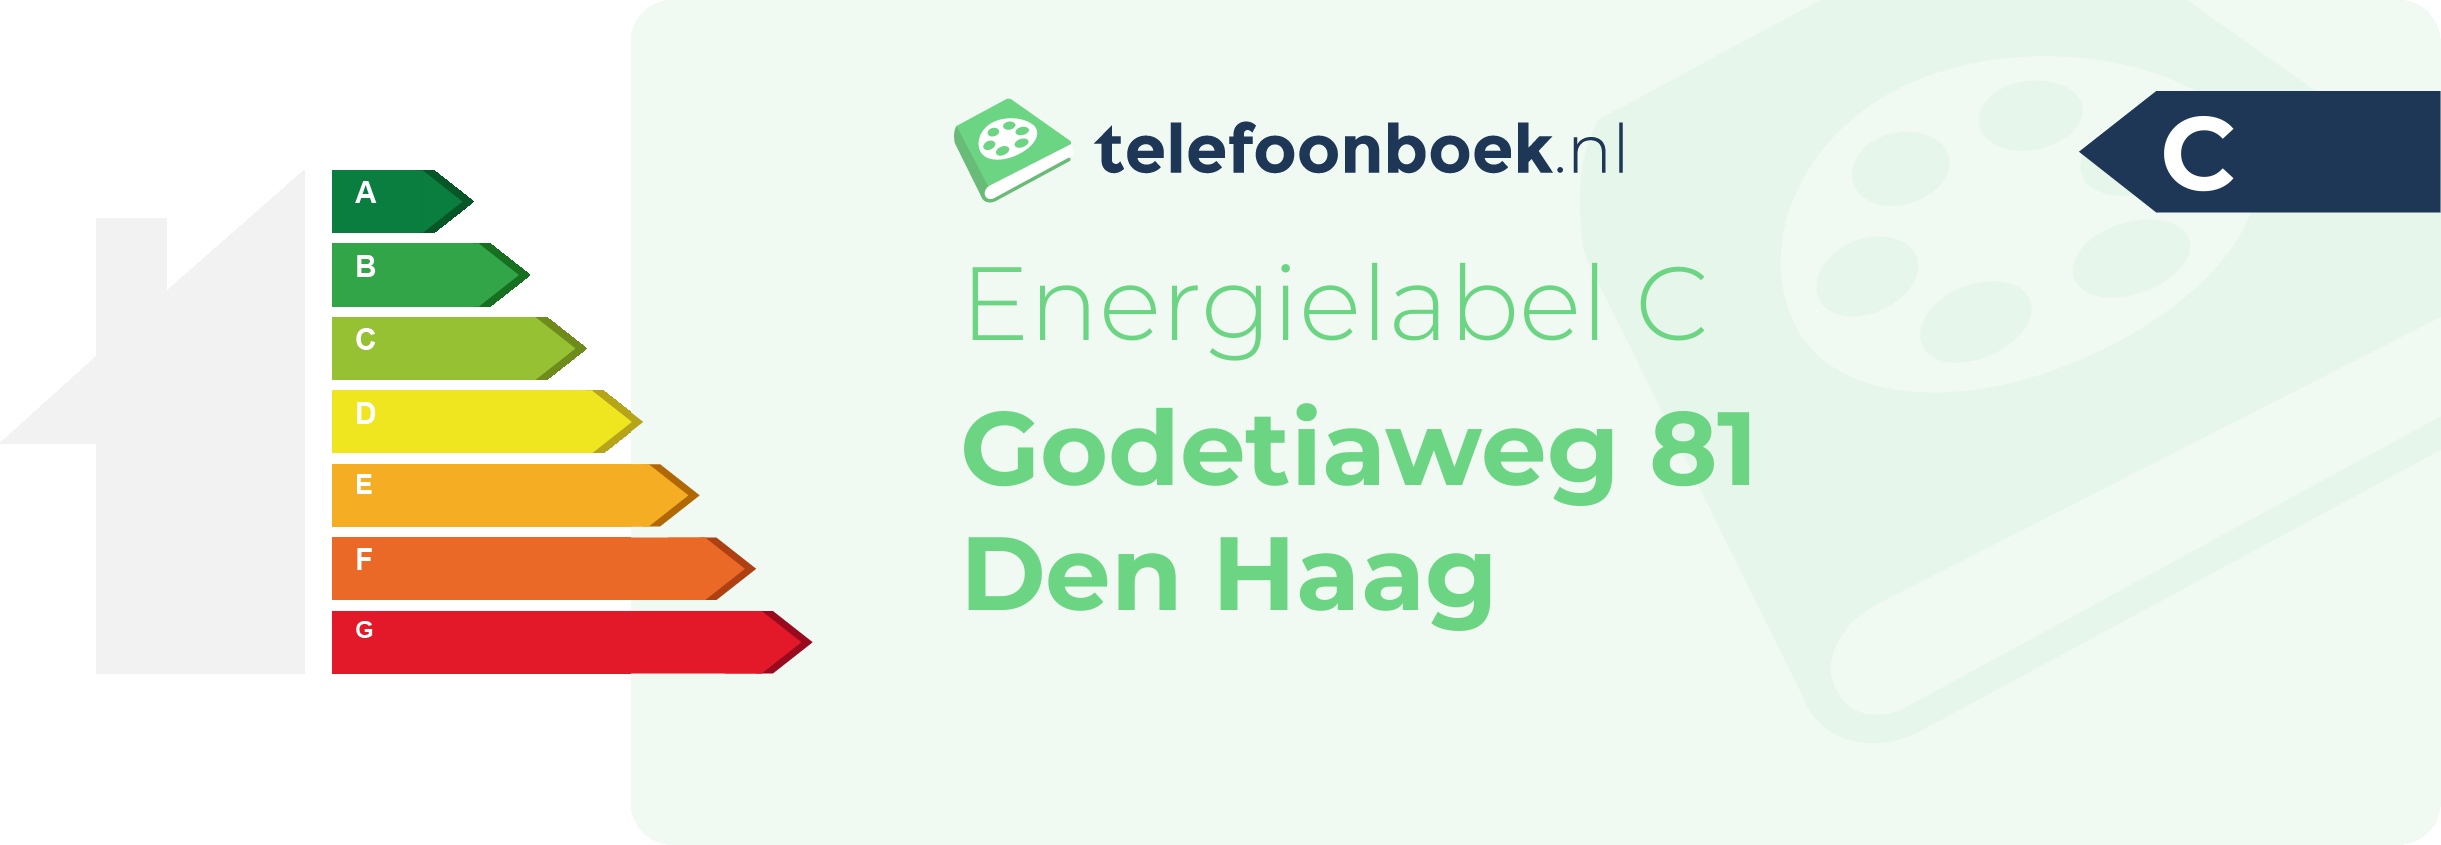 Energielabel Godetiaweg 81 Den Haag